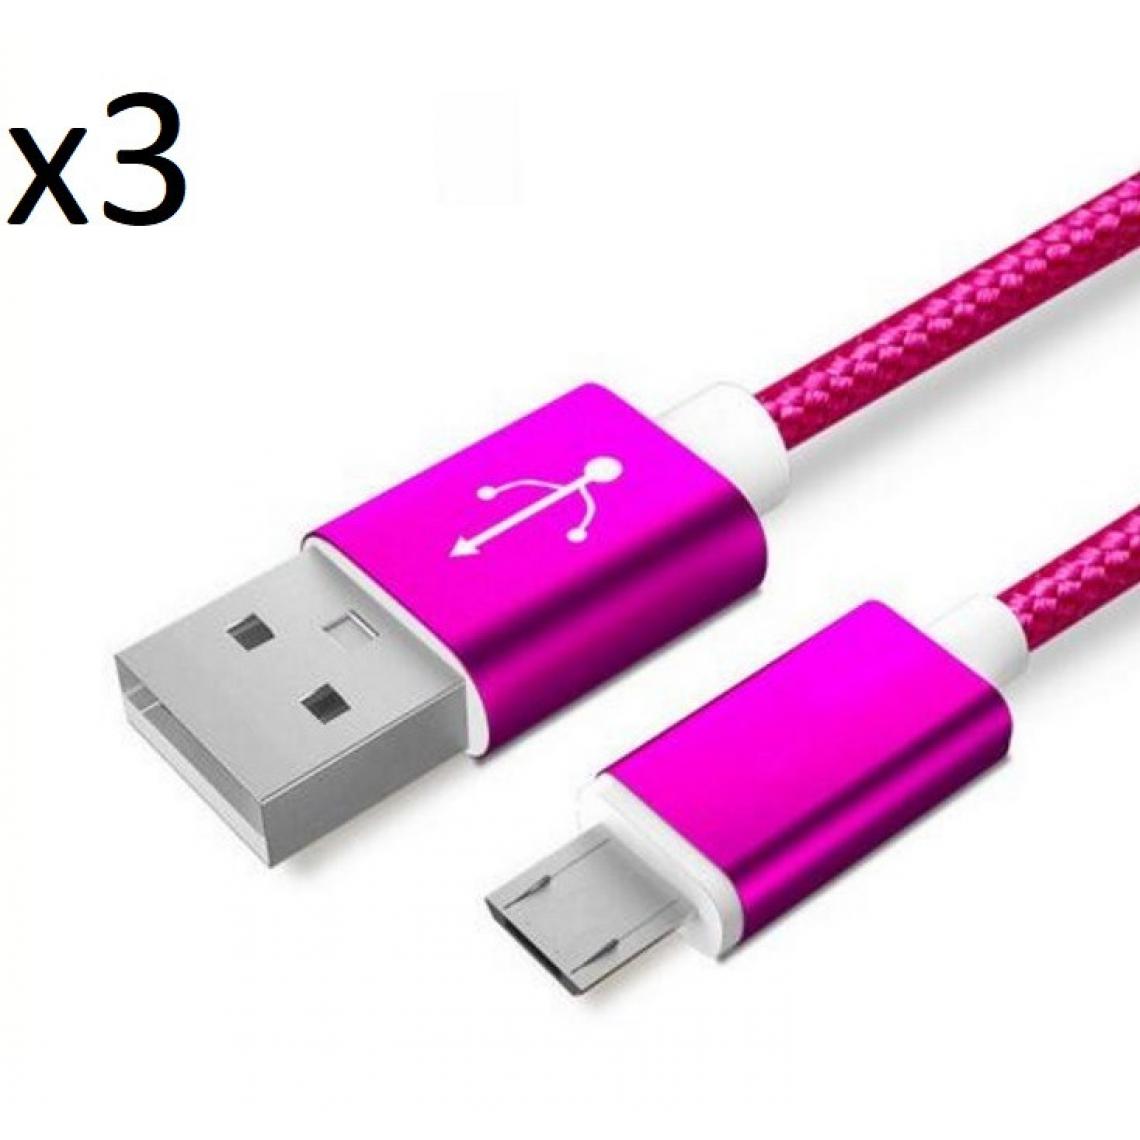 Shot - Pack de 3 Cables Metal Nylon Micro USB pour Manette Playstation 4 PS4 Smartphone Android Chargeur (ROSE BONBON) - Chargeur secteur téléphone